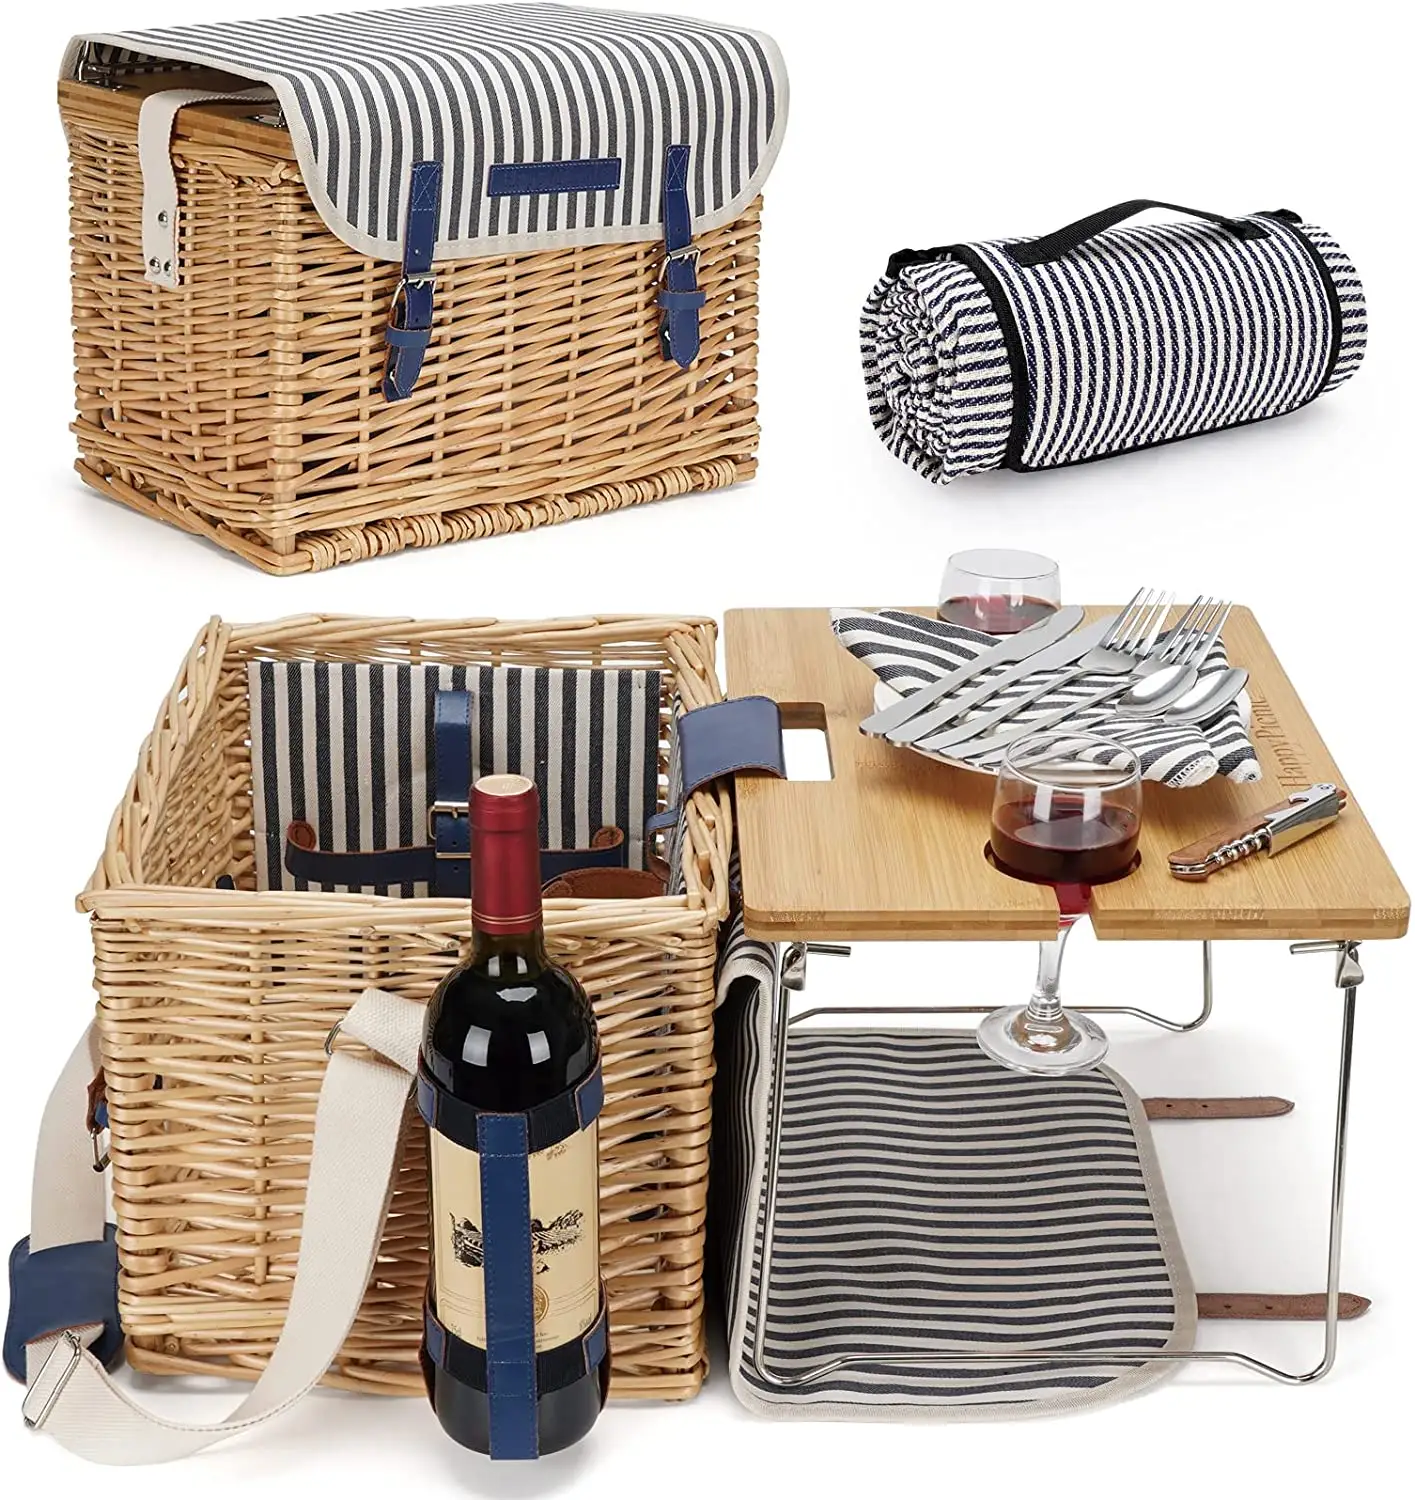 Willow Hamper Service Gift Set com Bambu Wine Table Wicker Piquenique Basket para 3 Pessoas Piquenique set